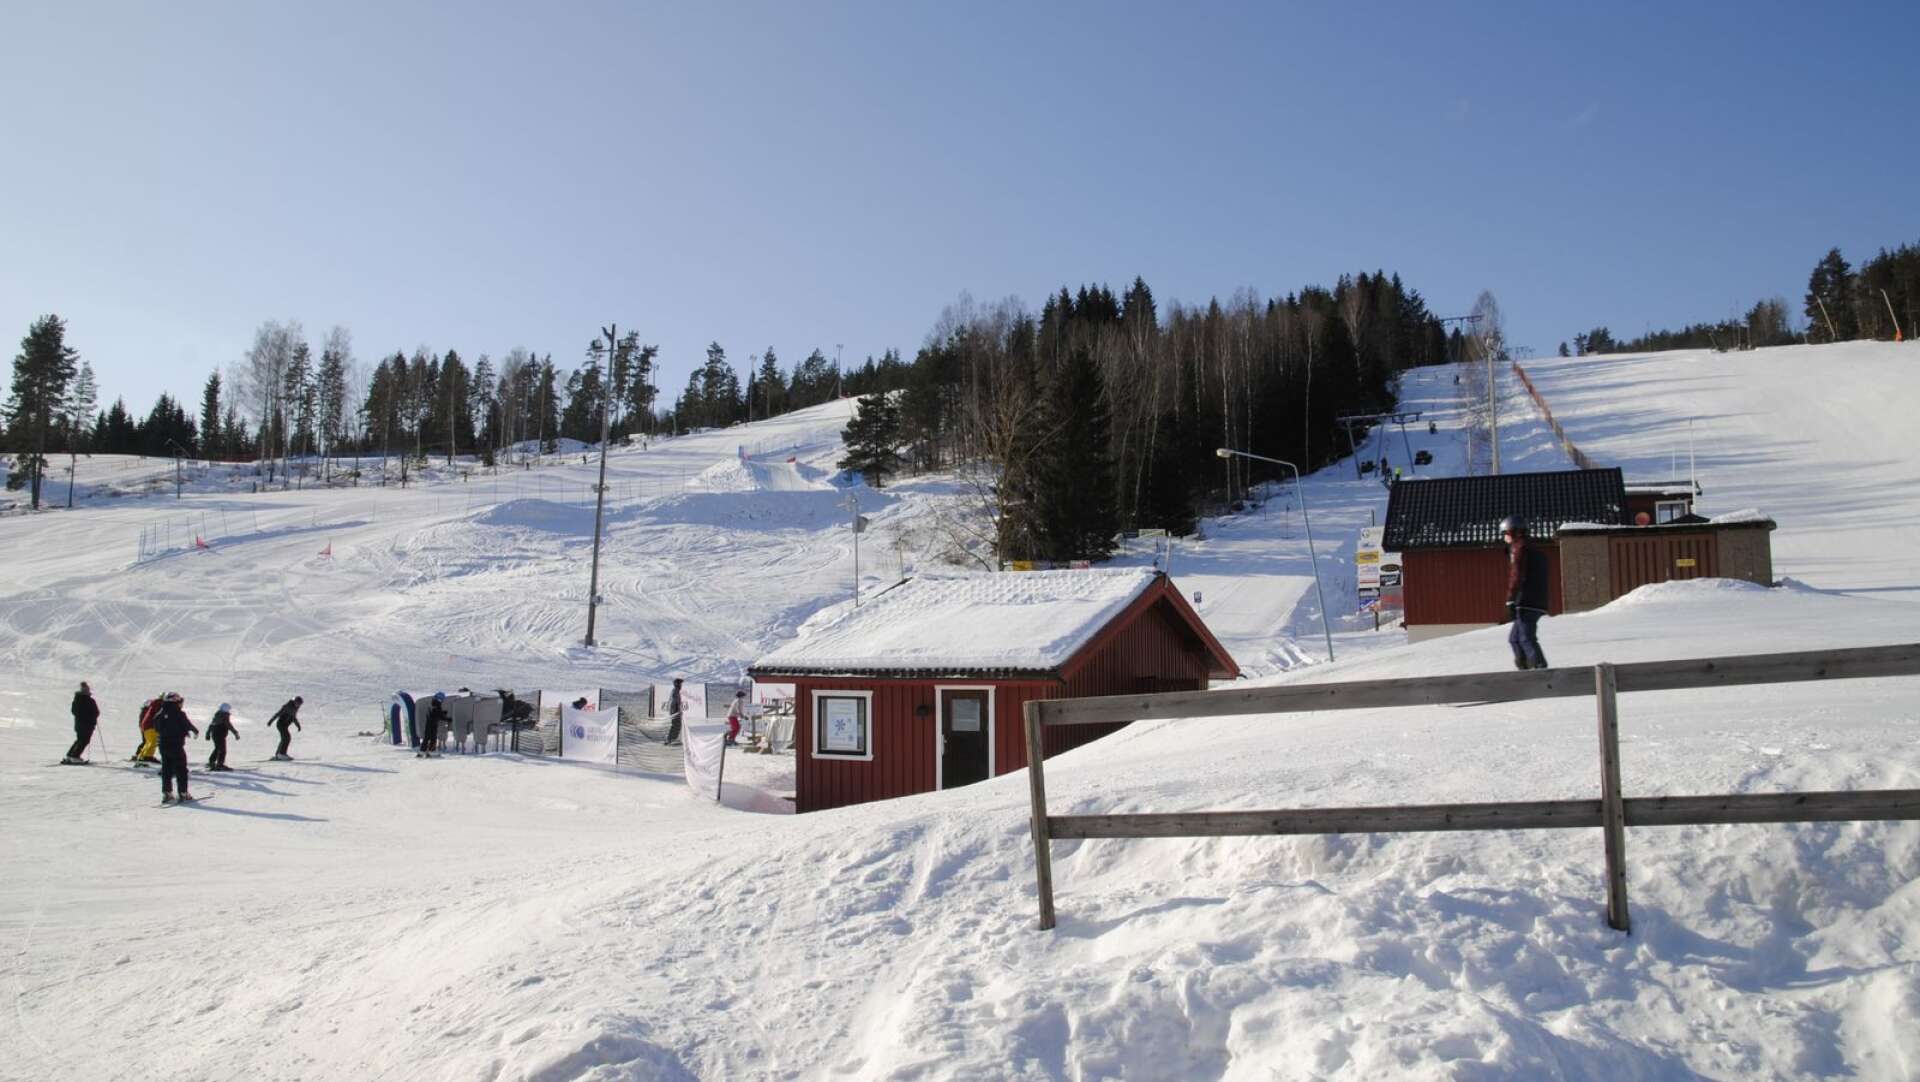 Vackert om vintern, som nu. Men Valfjället skicenter ska locka gäster även när snön har smält och satsar nu på en höghöjdsbana. Om politikerna vill.